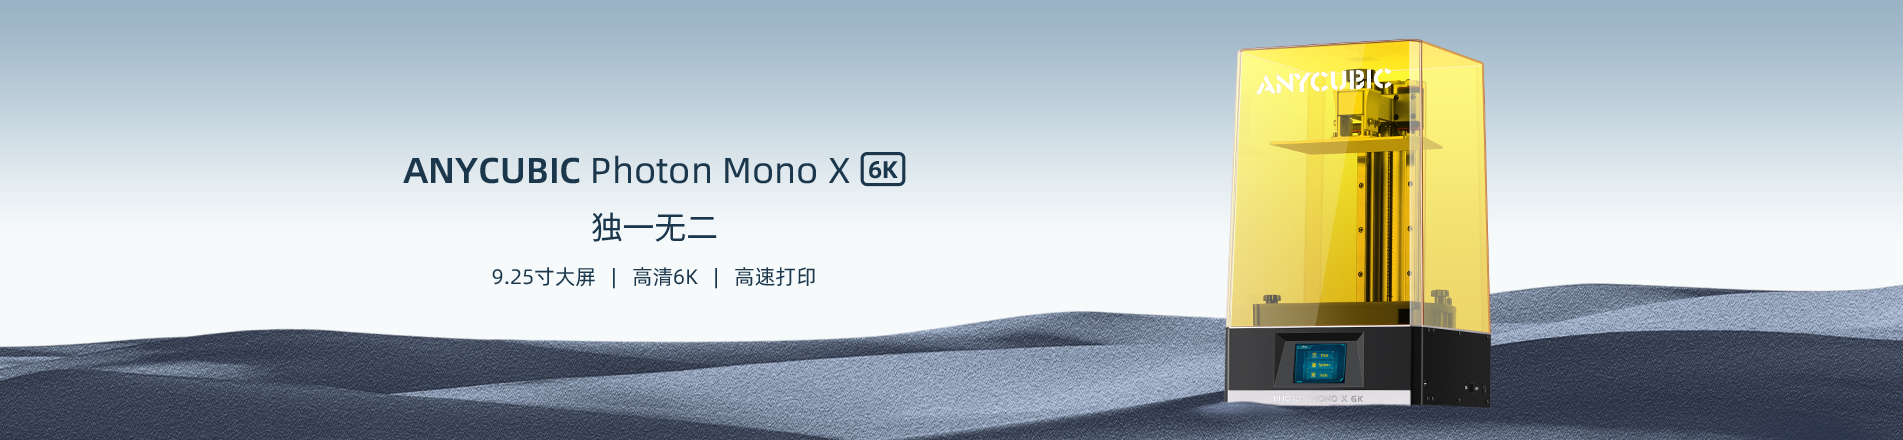 Photon Mono X 6K